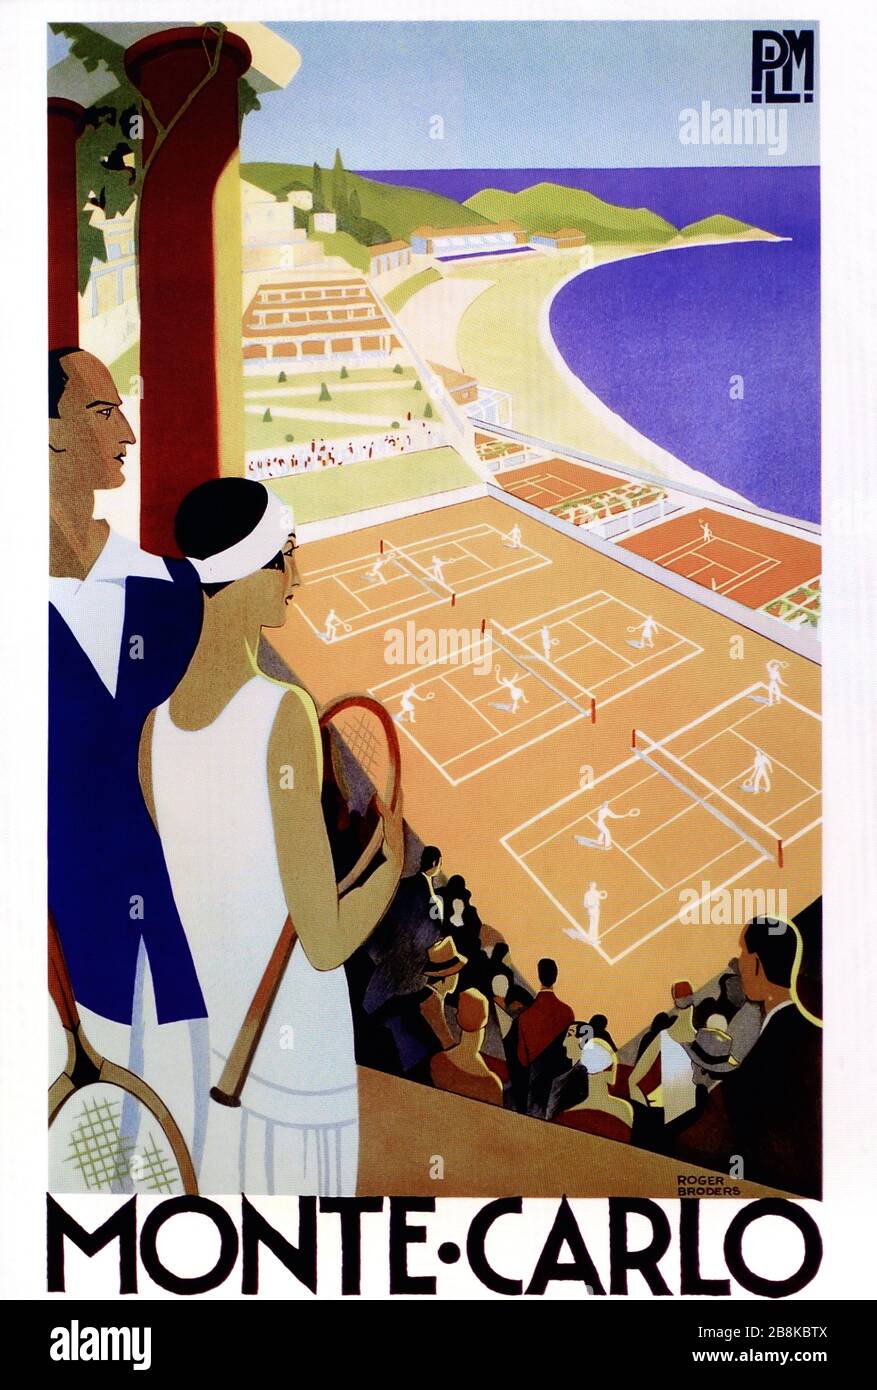 Tennis-Turnier von Monte Carlo, Monte Carlo Country Club (MCCC) und Tennisclub Monaco (1920er Jahre). Klassische PLM-Illustration, Poster oder Werbung von Roger Broders 1920er Jahren. Stockfoto